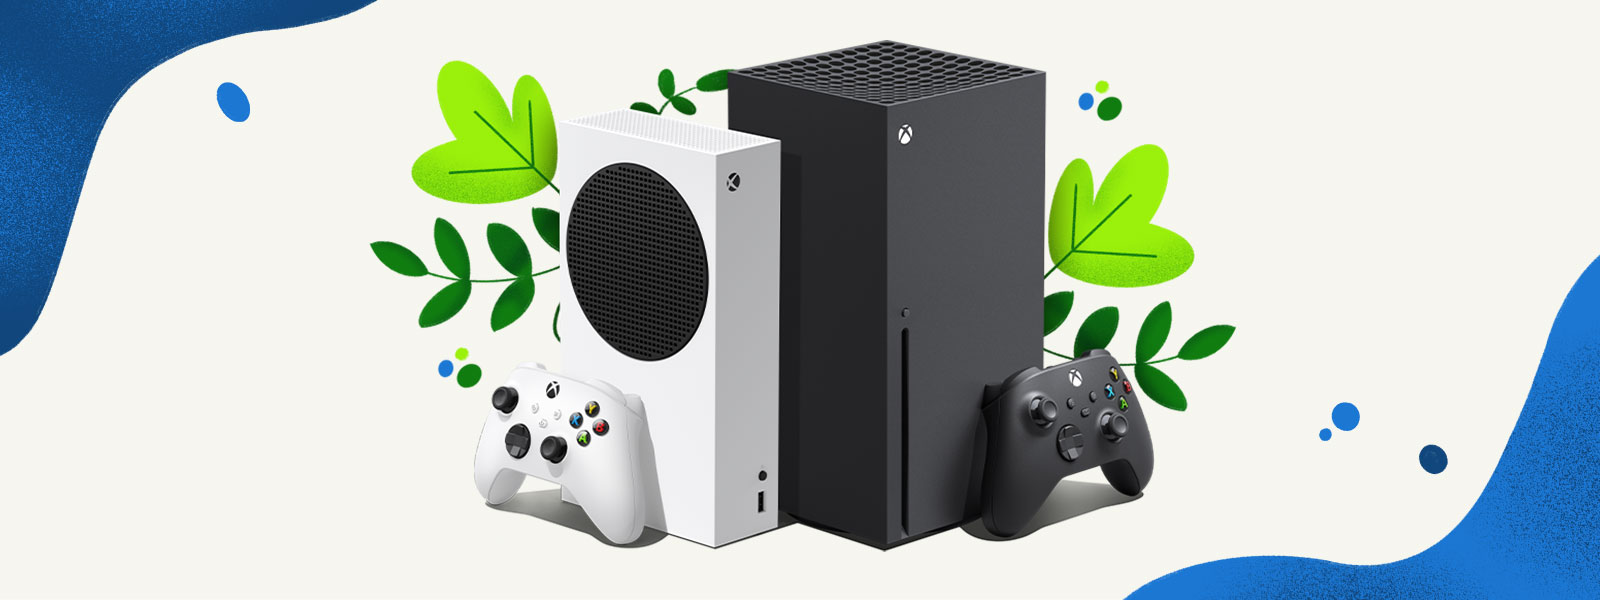 Os consoles do Xbox Series X e do Xbox Series S um ao lado do outro em frente a um fundo decorativo de plantas e respingos de água azul.